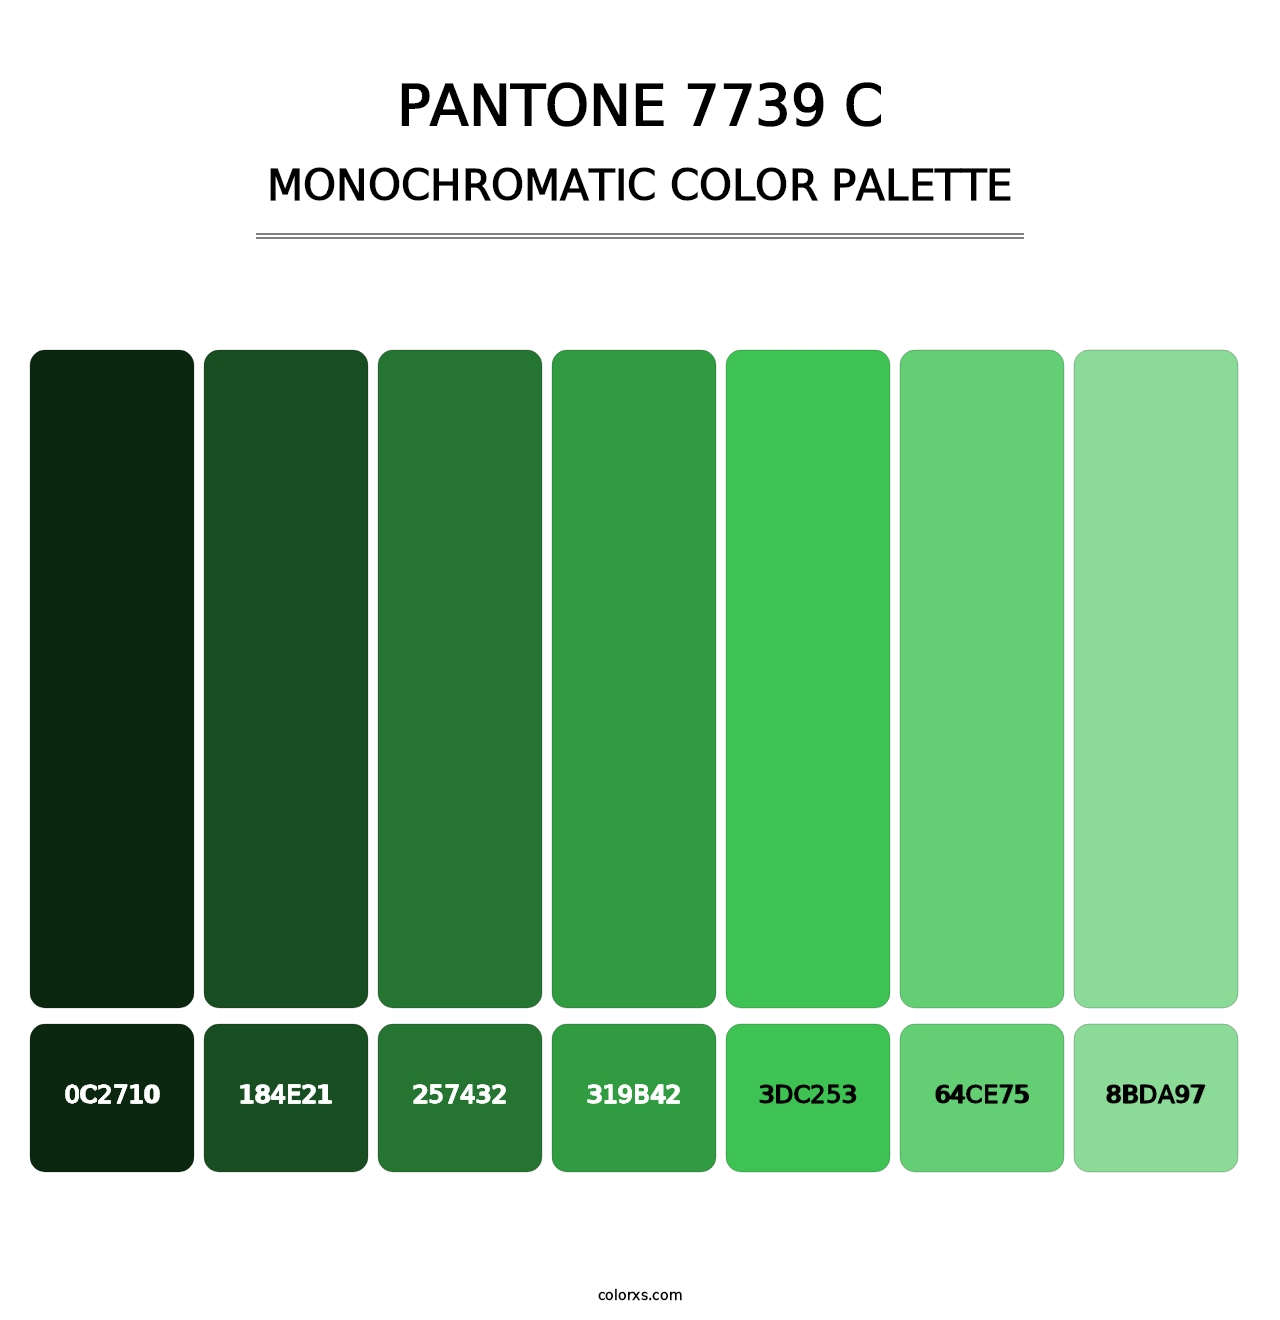 PANTONE 7739 C - Monochromatic Color Palette